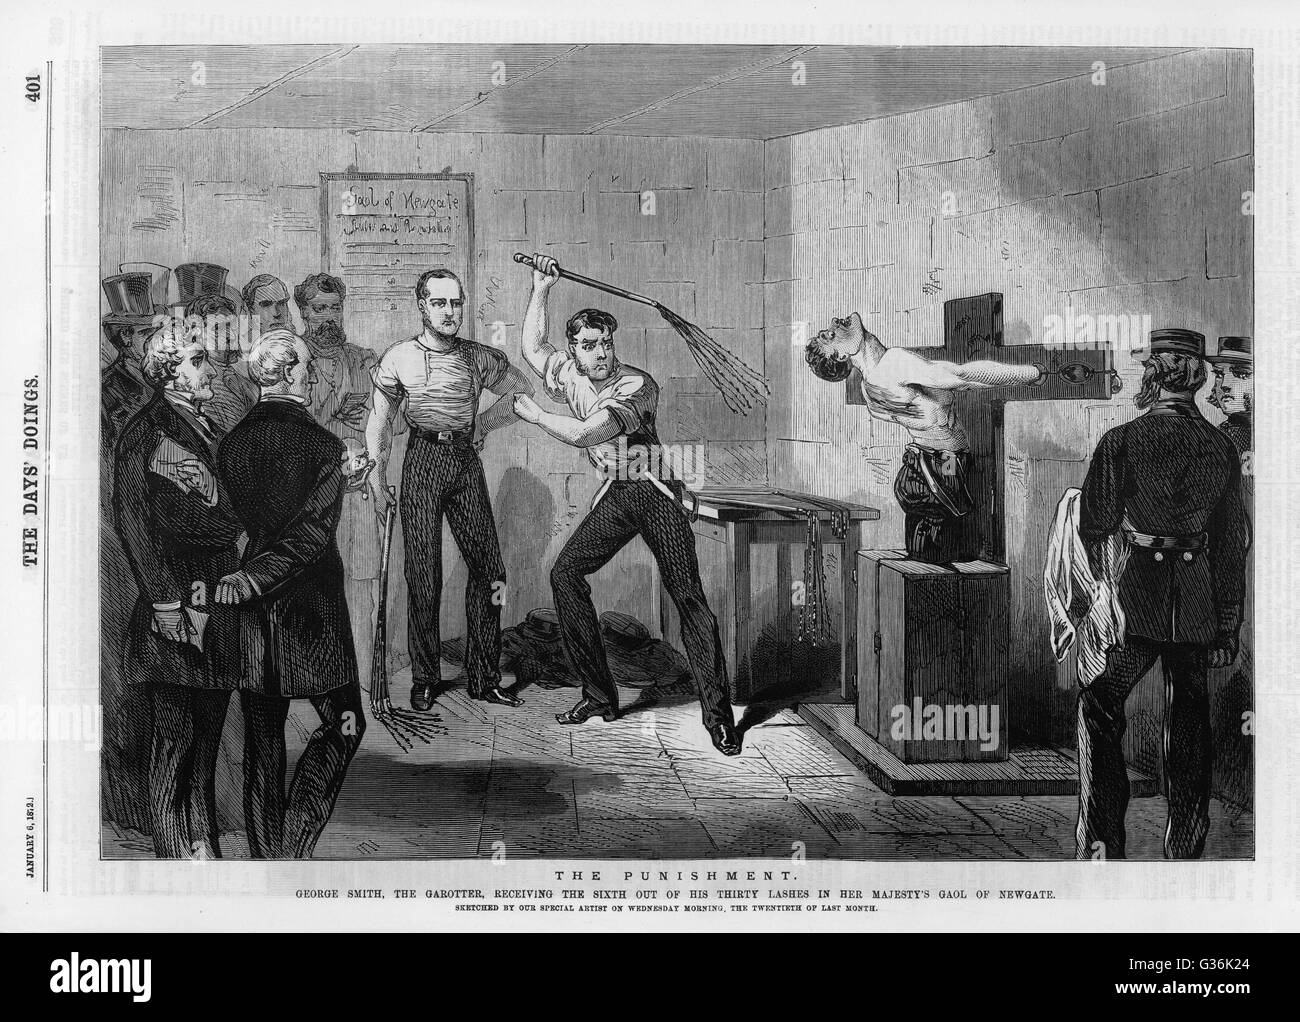 George Smith, ein Garrotter, erhält das sechste von dreißig Wimpern die neunschwänziger Strafe für seine Verbrechen.        Datum: 1872 Stockfoto